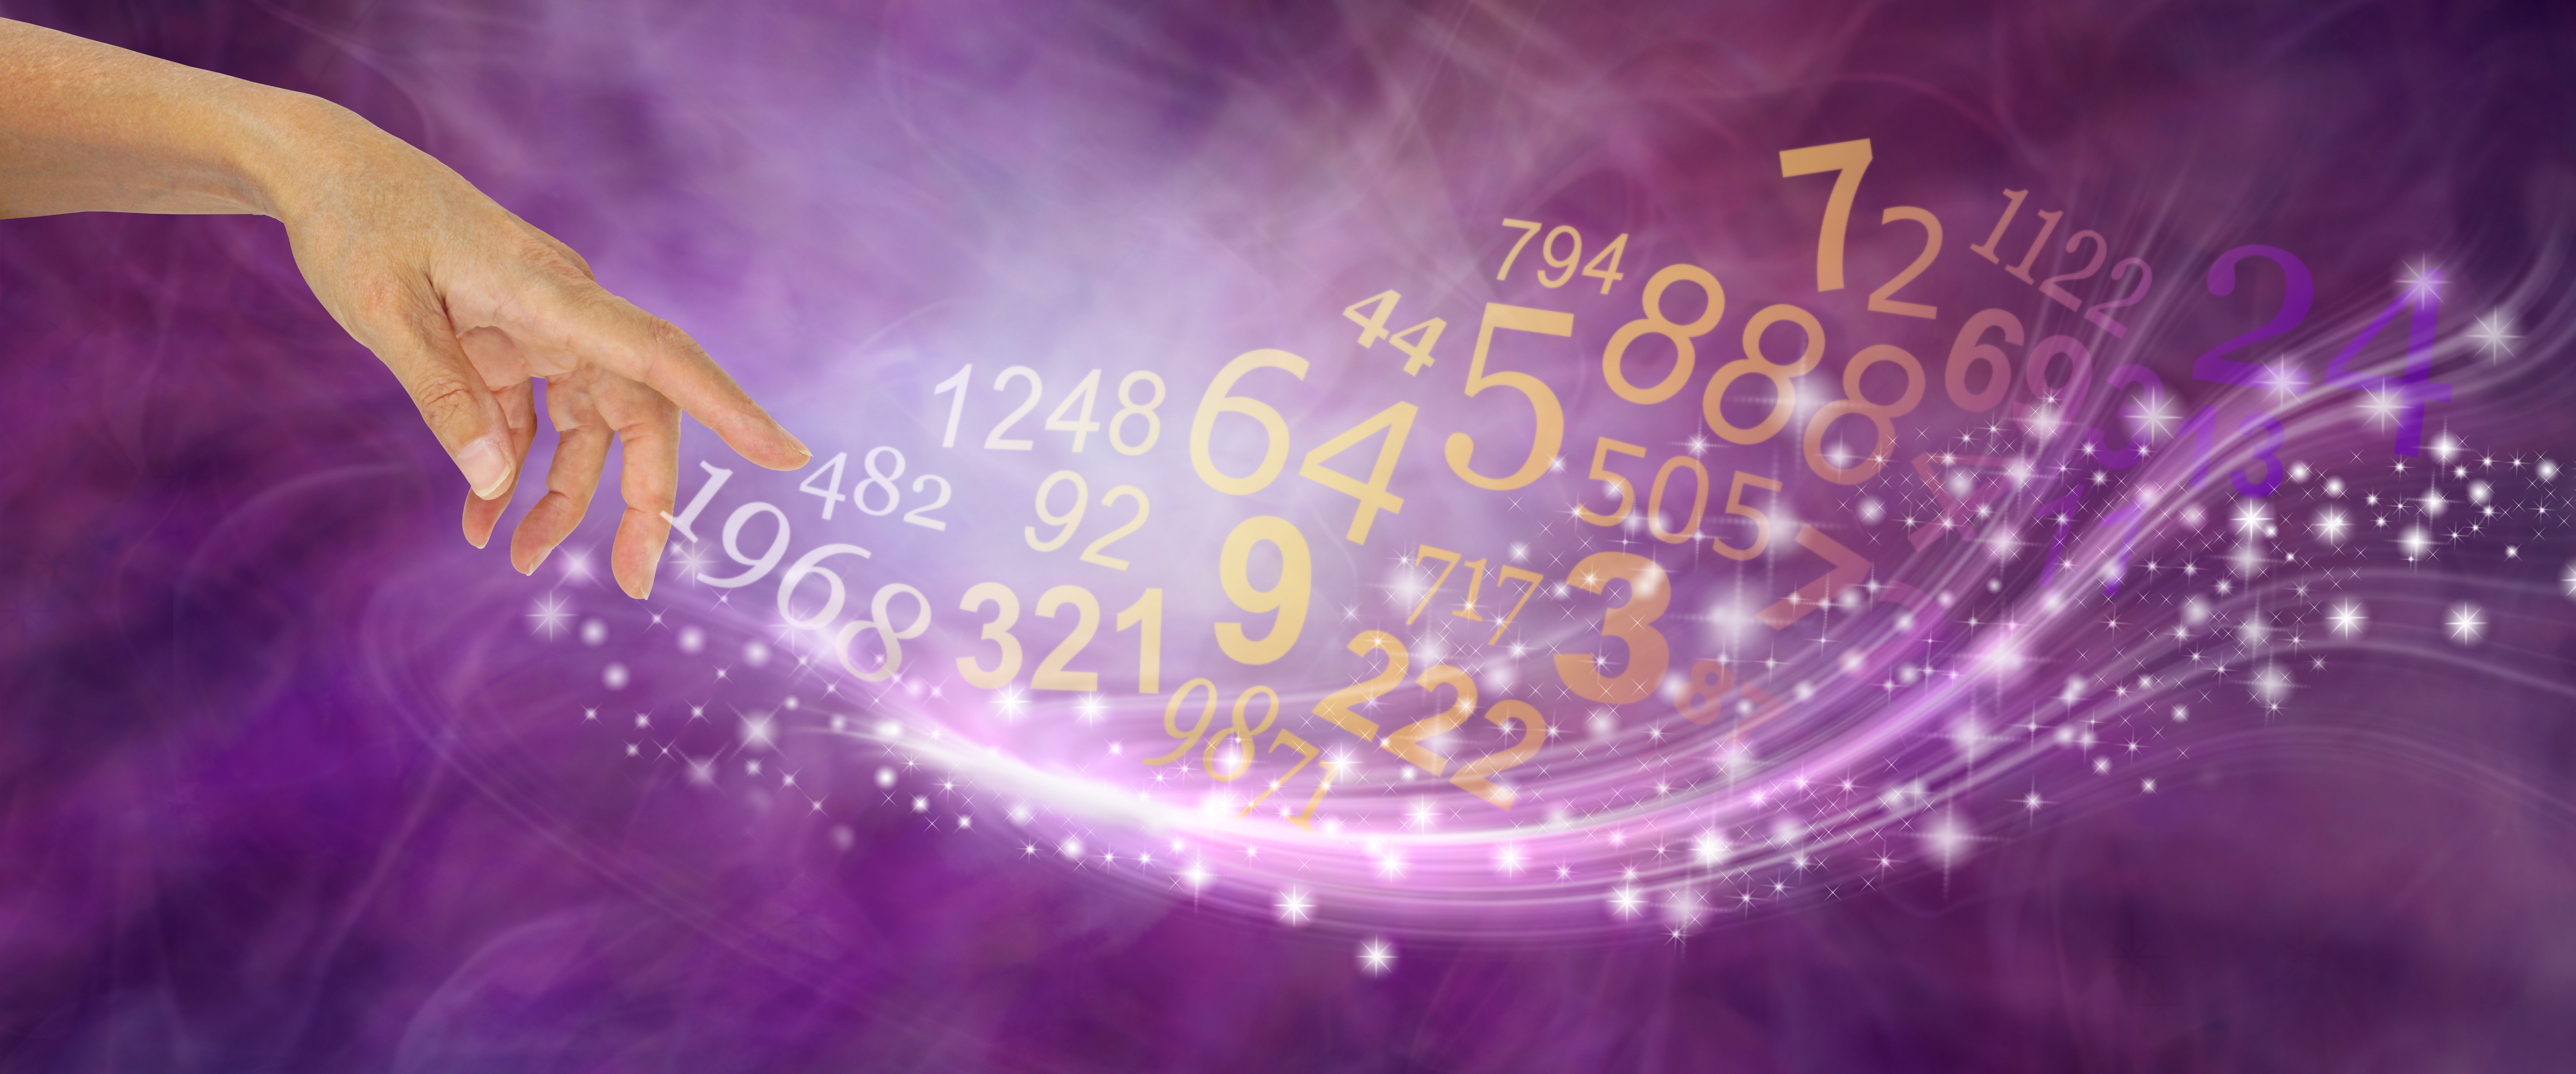 Mano femenina creando especie de destellos y un flujo de números aleatorios sobre un fondo de formación de energía púrpura. | Imagen: Shutterstock